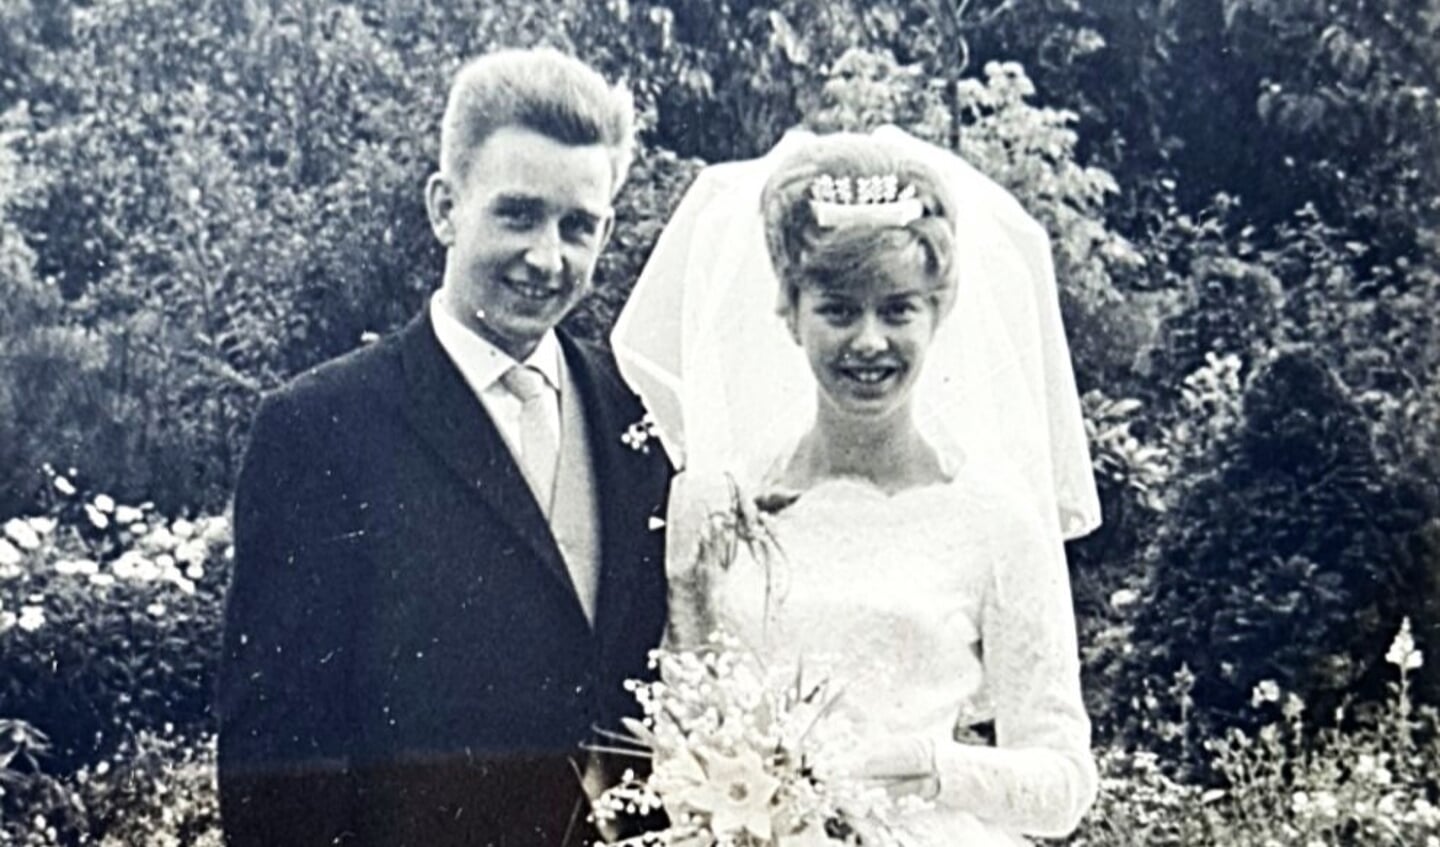 En zo zag het kersverse echtpaar er 60 jaar geleden uit toen zij in het huwelijk traden (familiefoto).